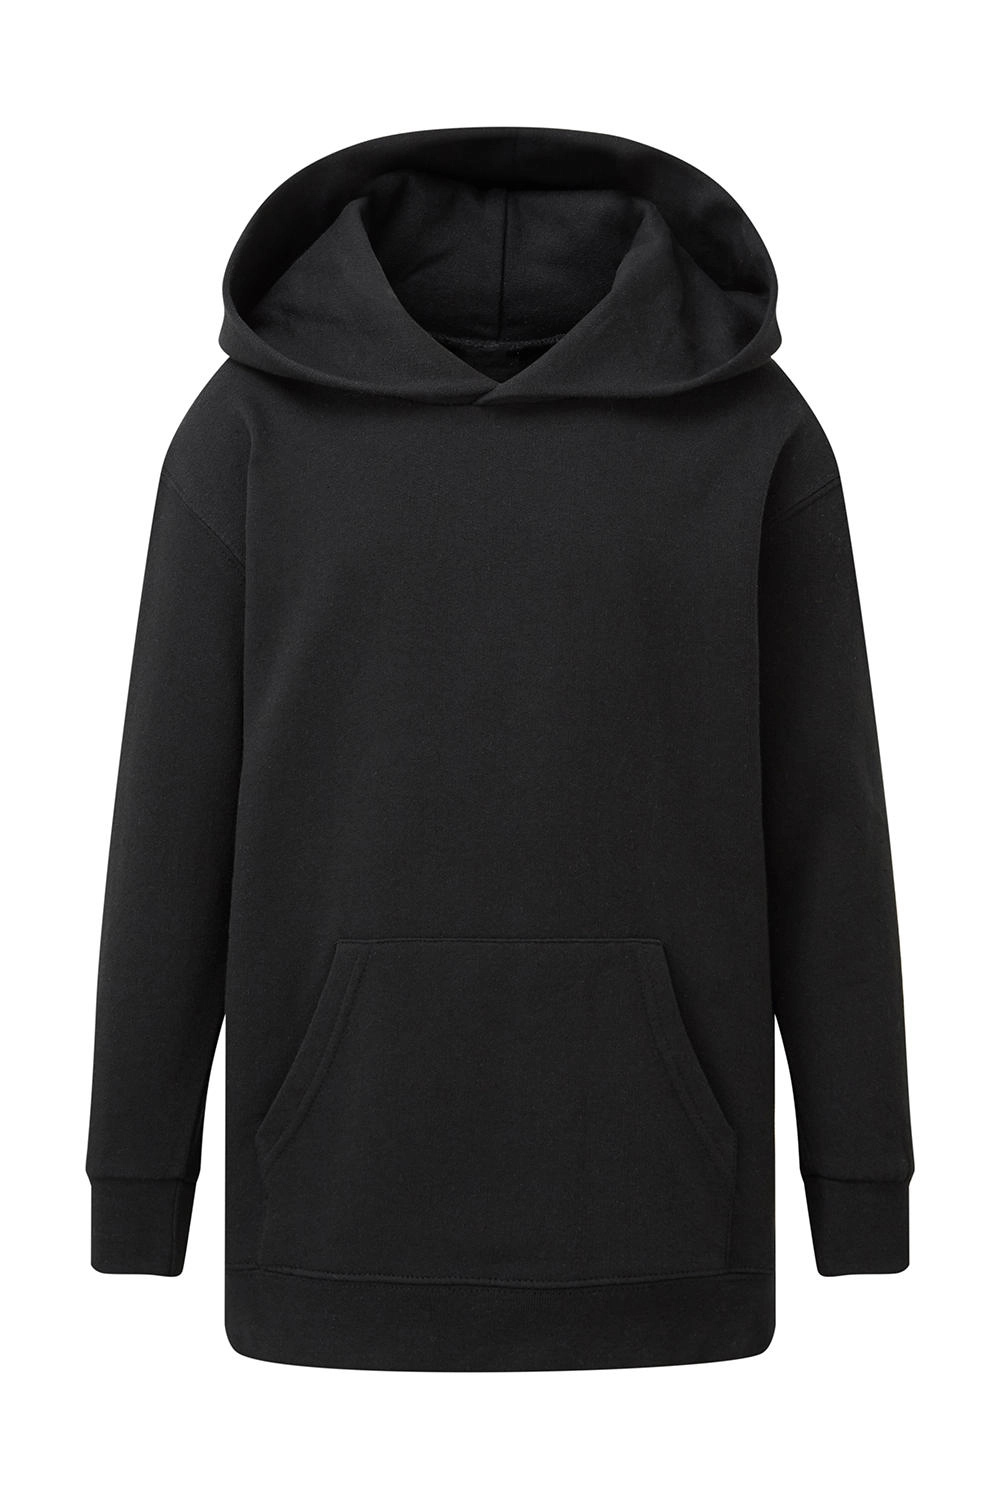 Hooded Sweatshirt Kids zum Besticken und Bedrucken in der Farbe Black mit Ihren Logo, Schriftzug oder Motiv.